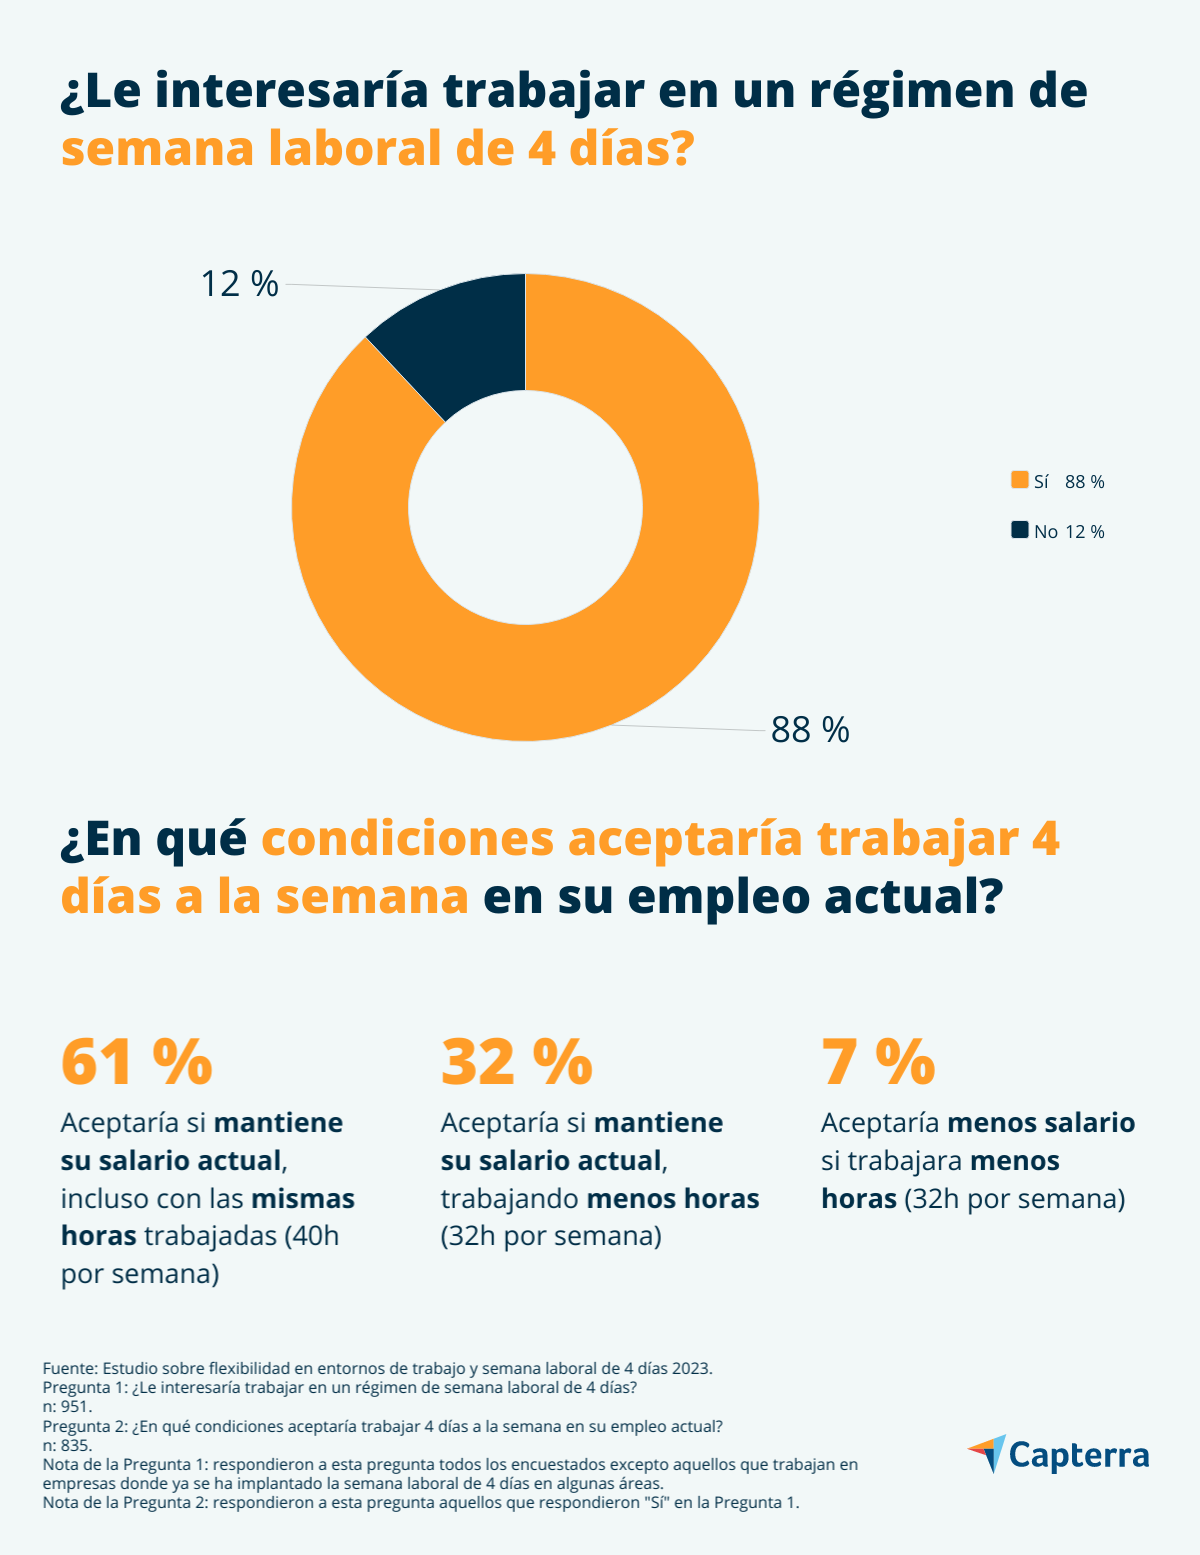 Interés de los empleados españoles en la semana laboral de 4 días